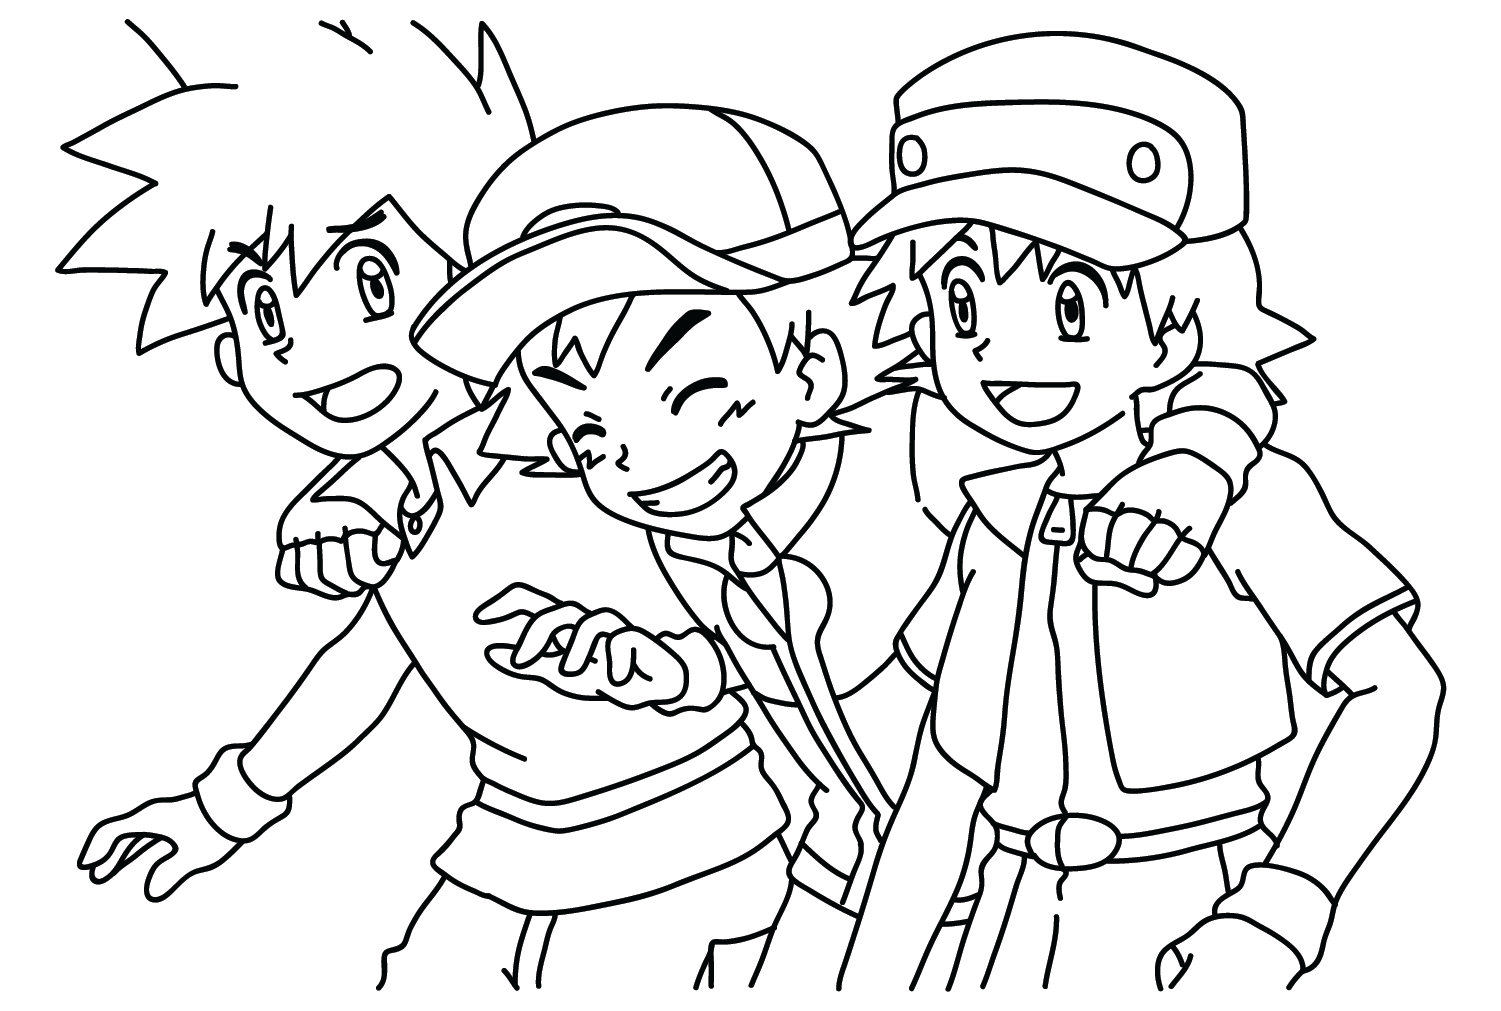 Página en color de Pokémon Ritchie, Gary Oak y Ash de Pokémon Ritchie